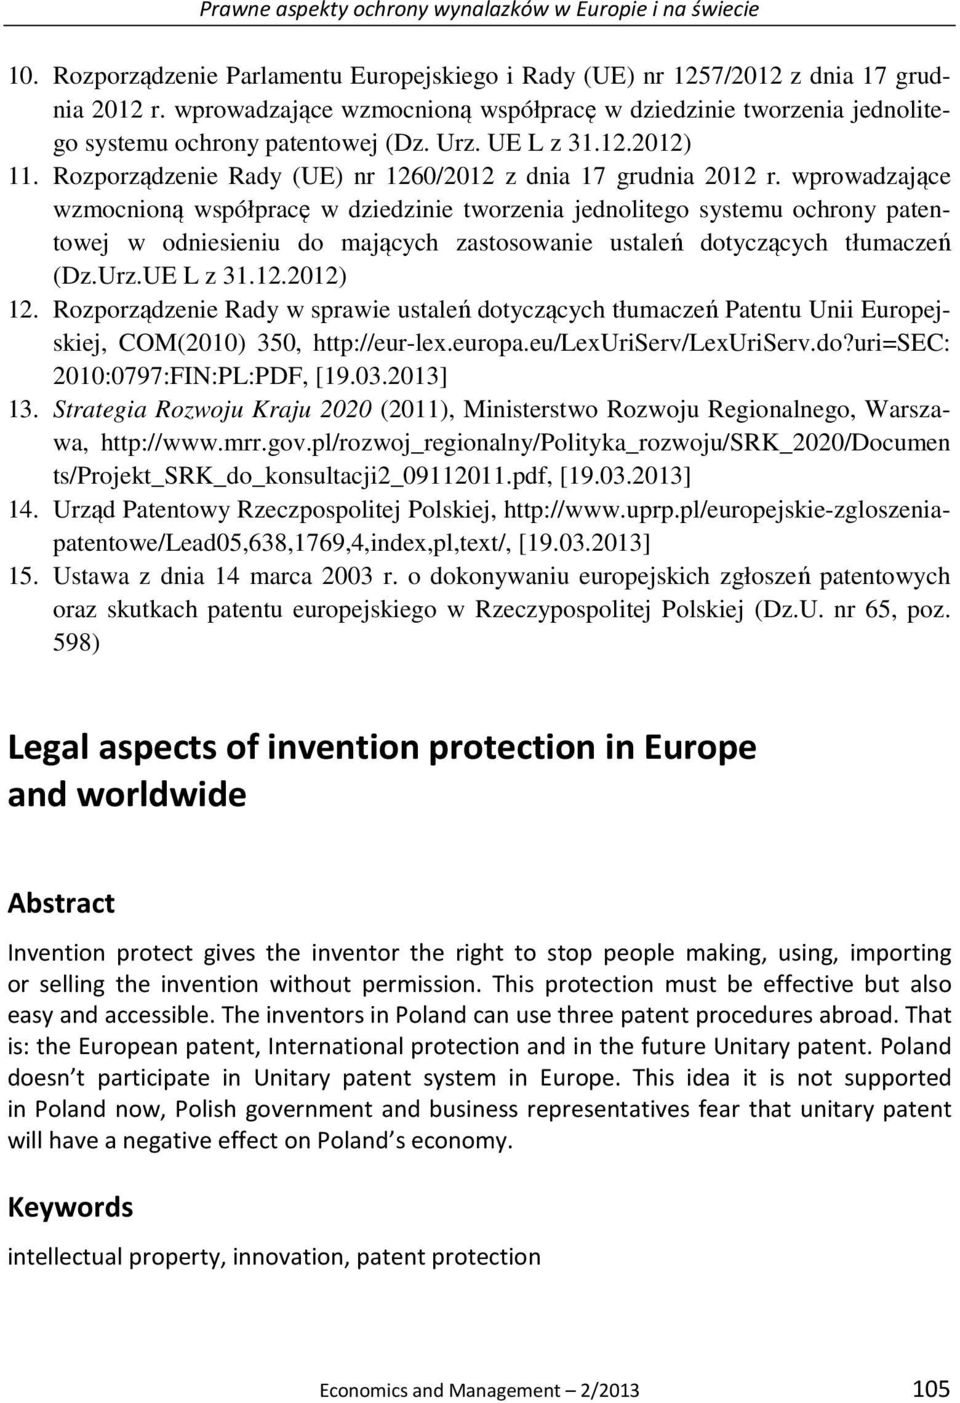 wprowadzające wzmocnioną współpracę w dziedzinie tworzenia jednolitego systemu ochrony patentowej w odniesieniu do mających zastosowanie ustaleń dotyczących tłumaczeń (Dz.Urz.UE L z 31.12.2012) 12.